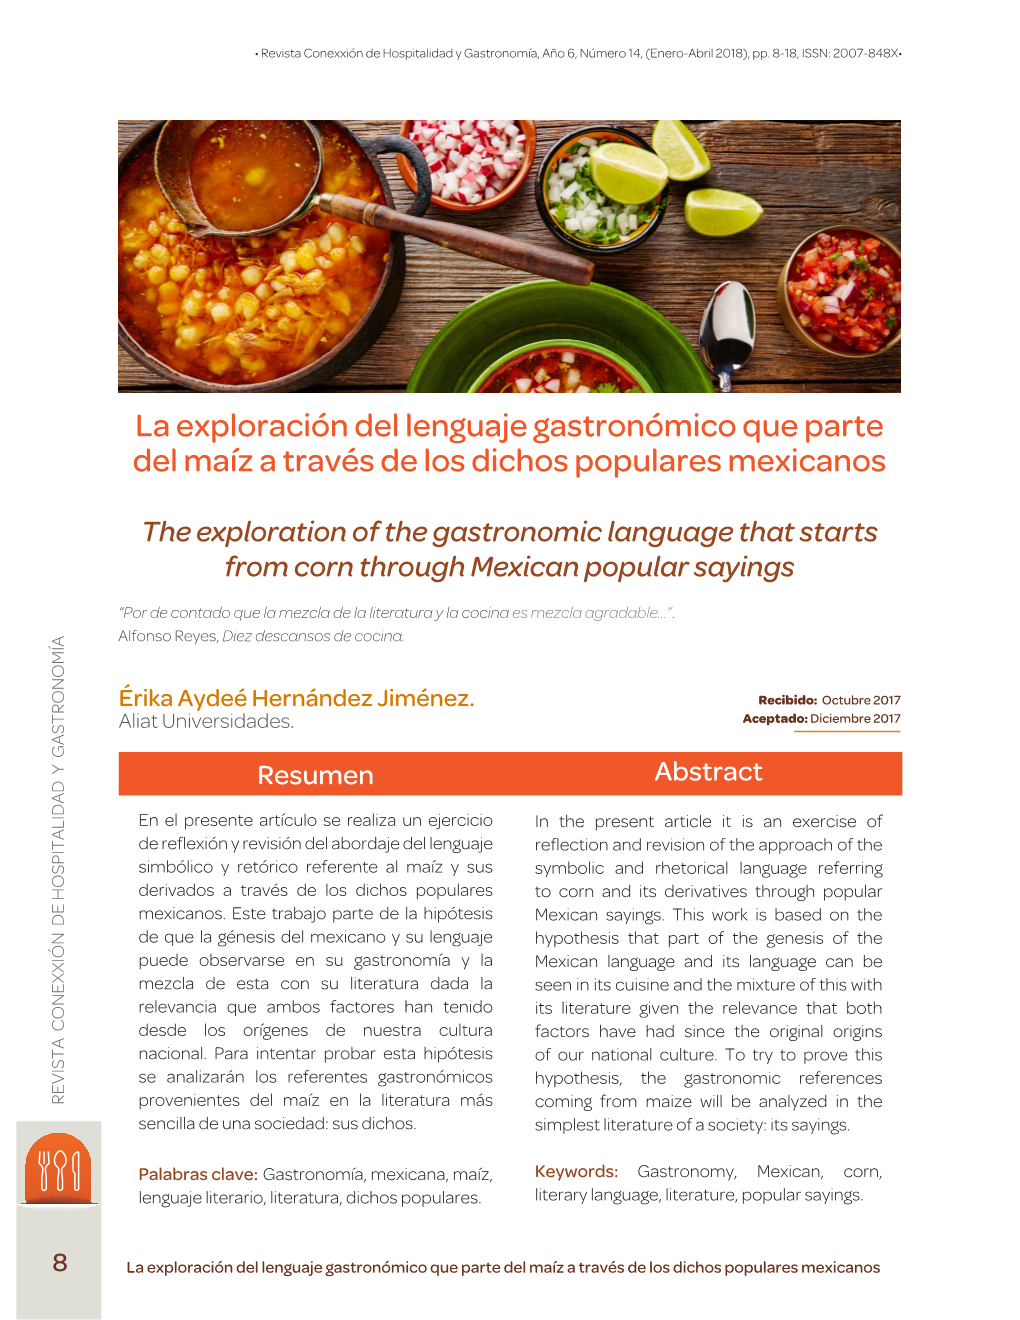 La Exploración Del Lenguaje Gastronómico Que Parte Del Maíz a Través De Los Dichos Populares Mexicanos